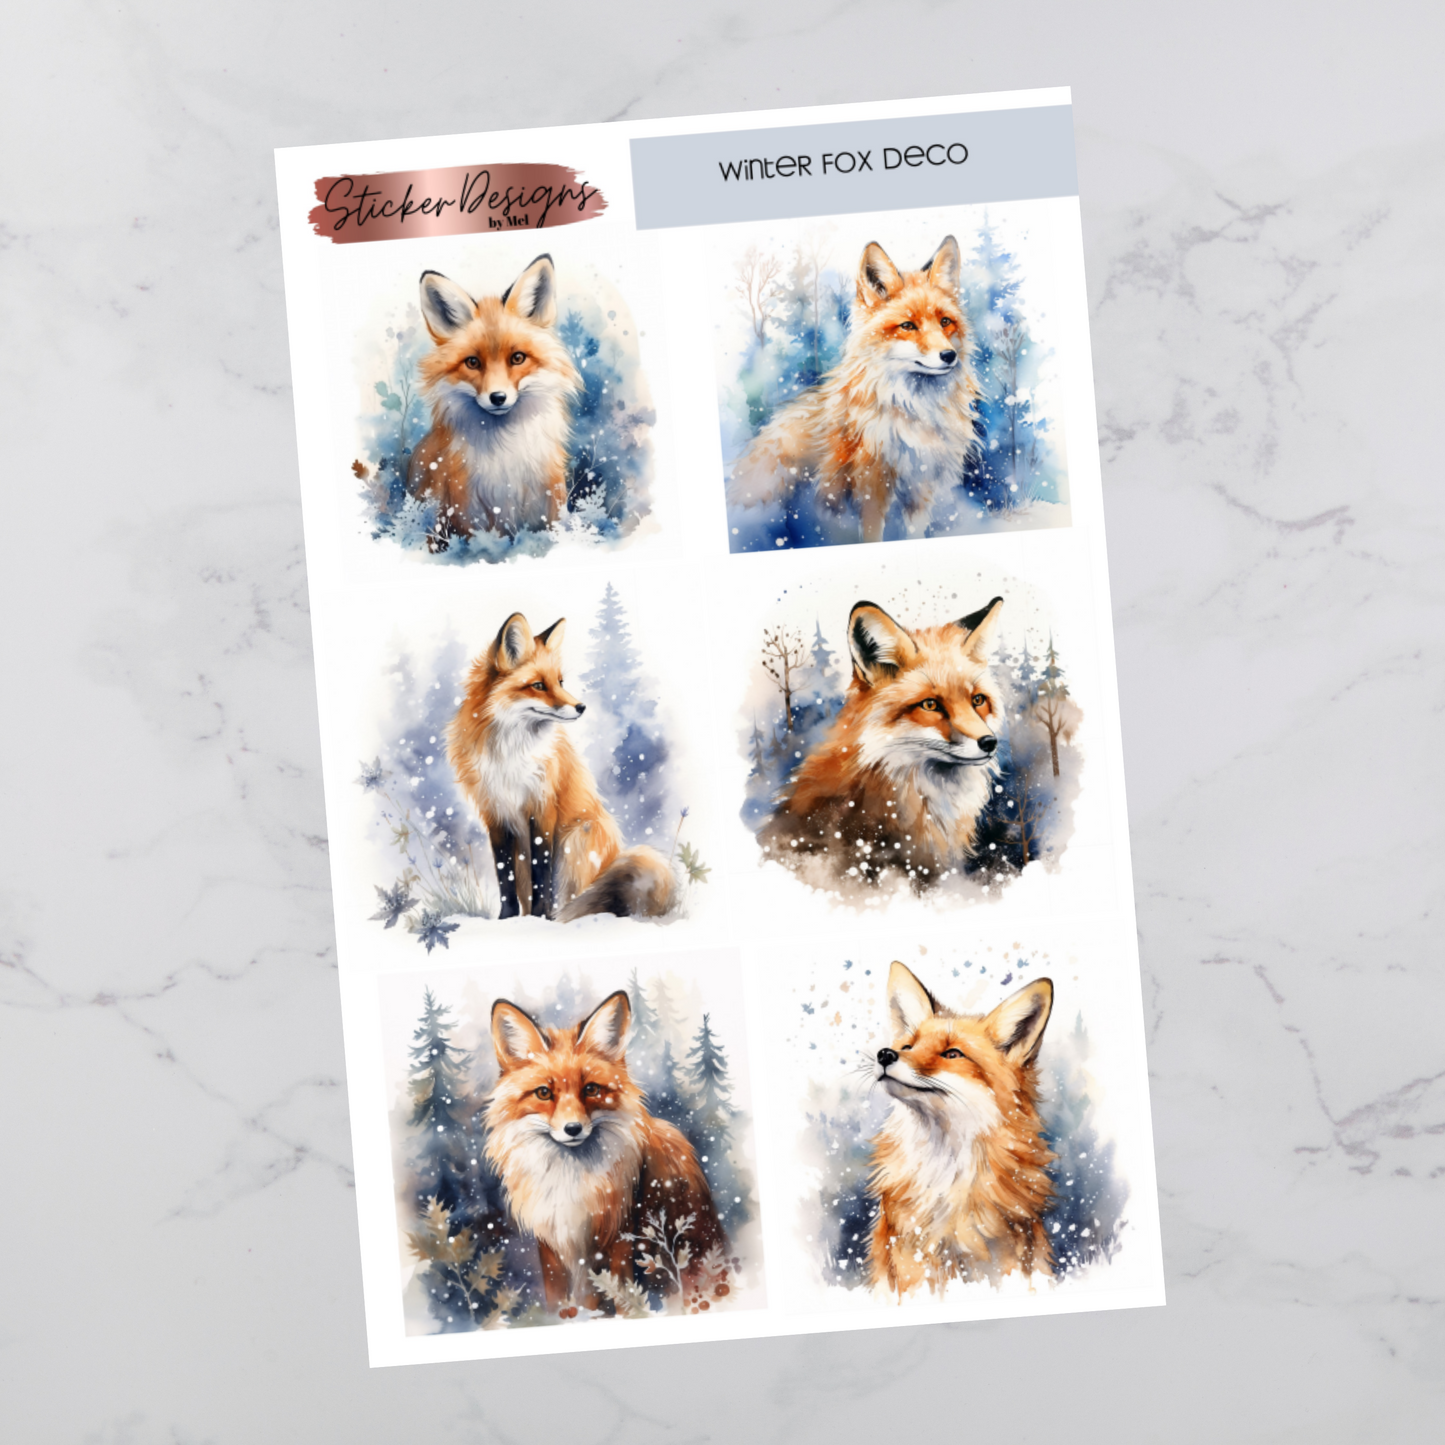 Winter Fox Deco - Deco Stickers